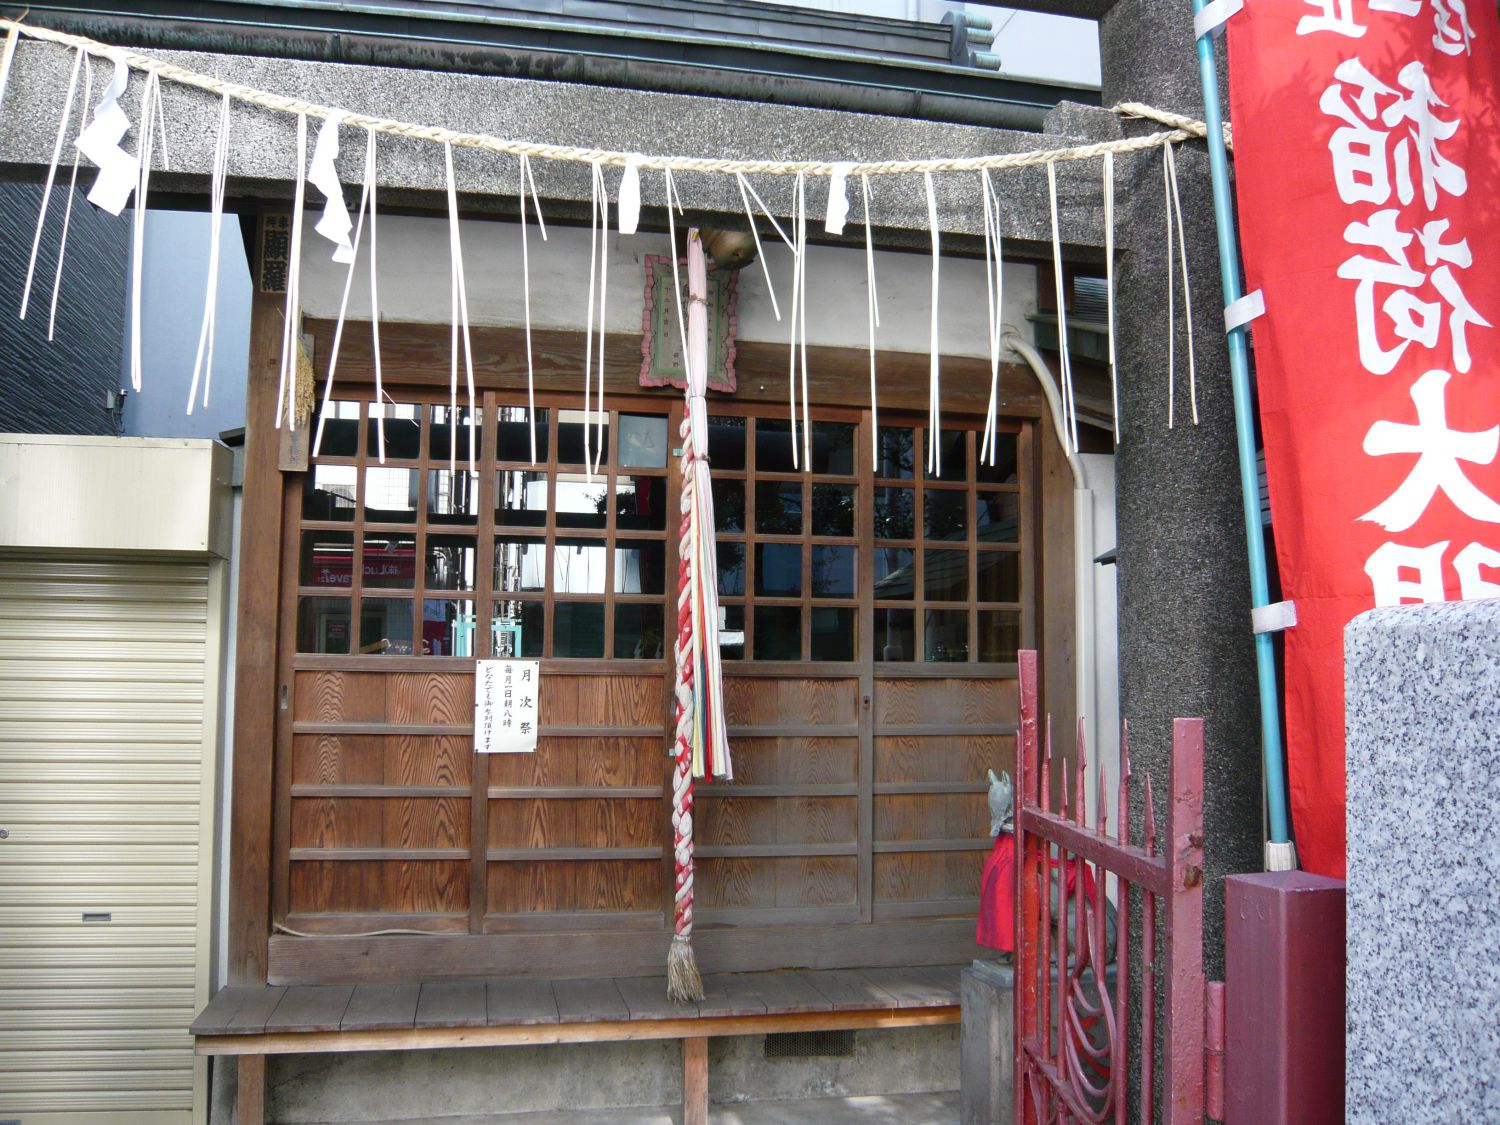  亀住稲荷神社 